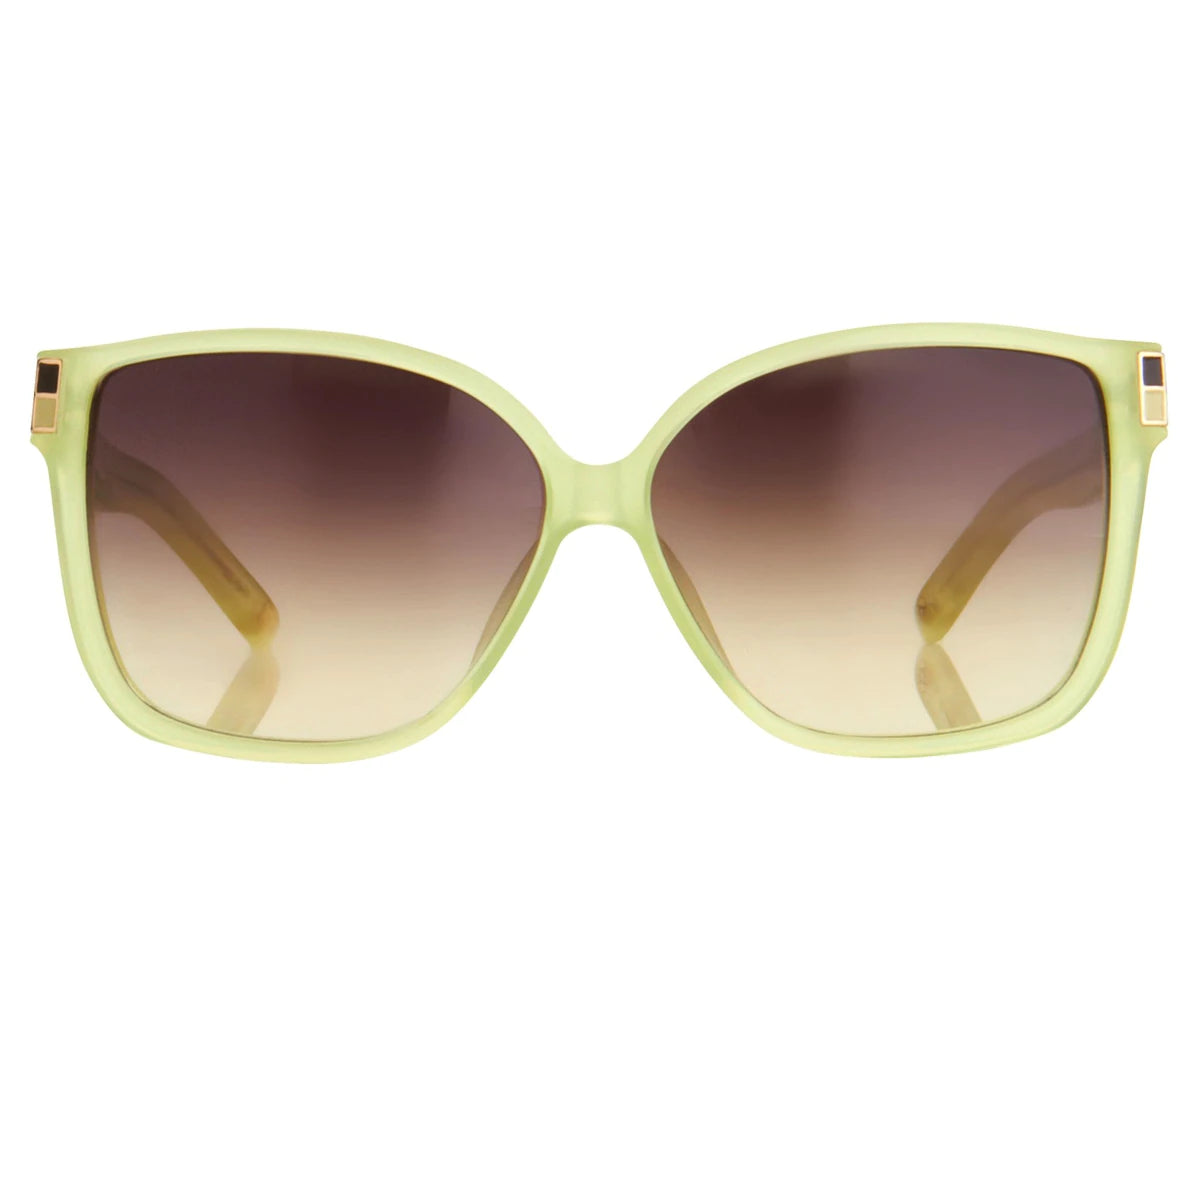 Oscar De La Renta Sunglasses Oversized Green and Brown ODLR21C7SUN